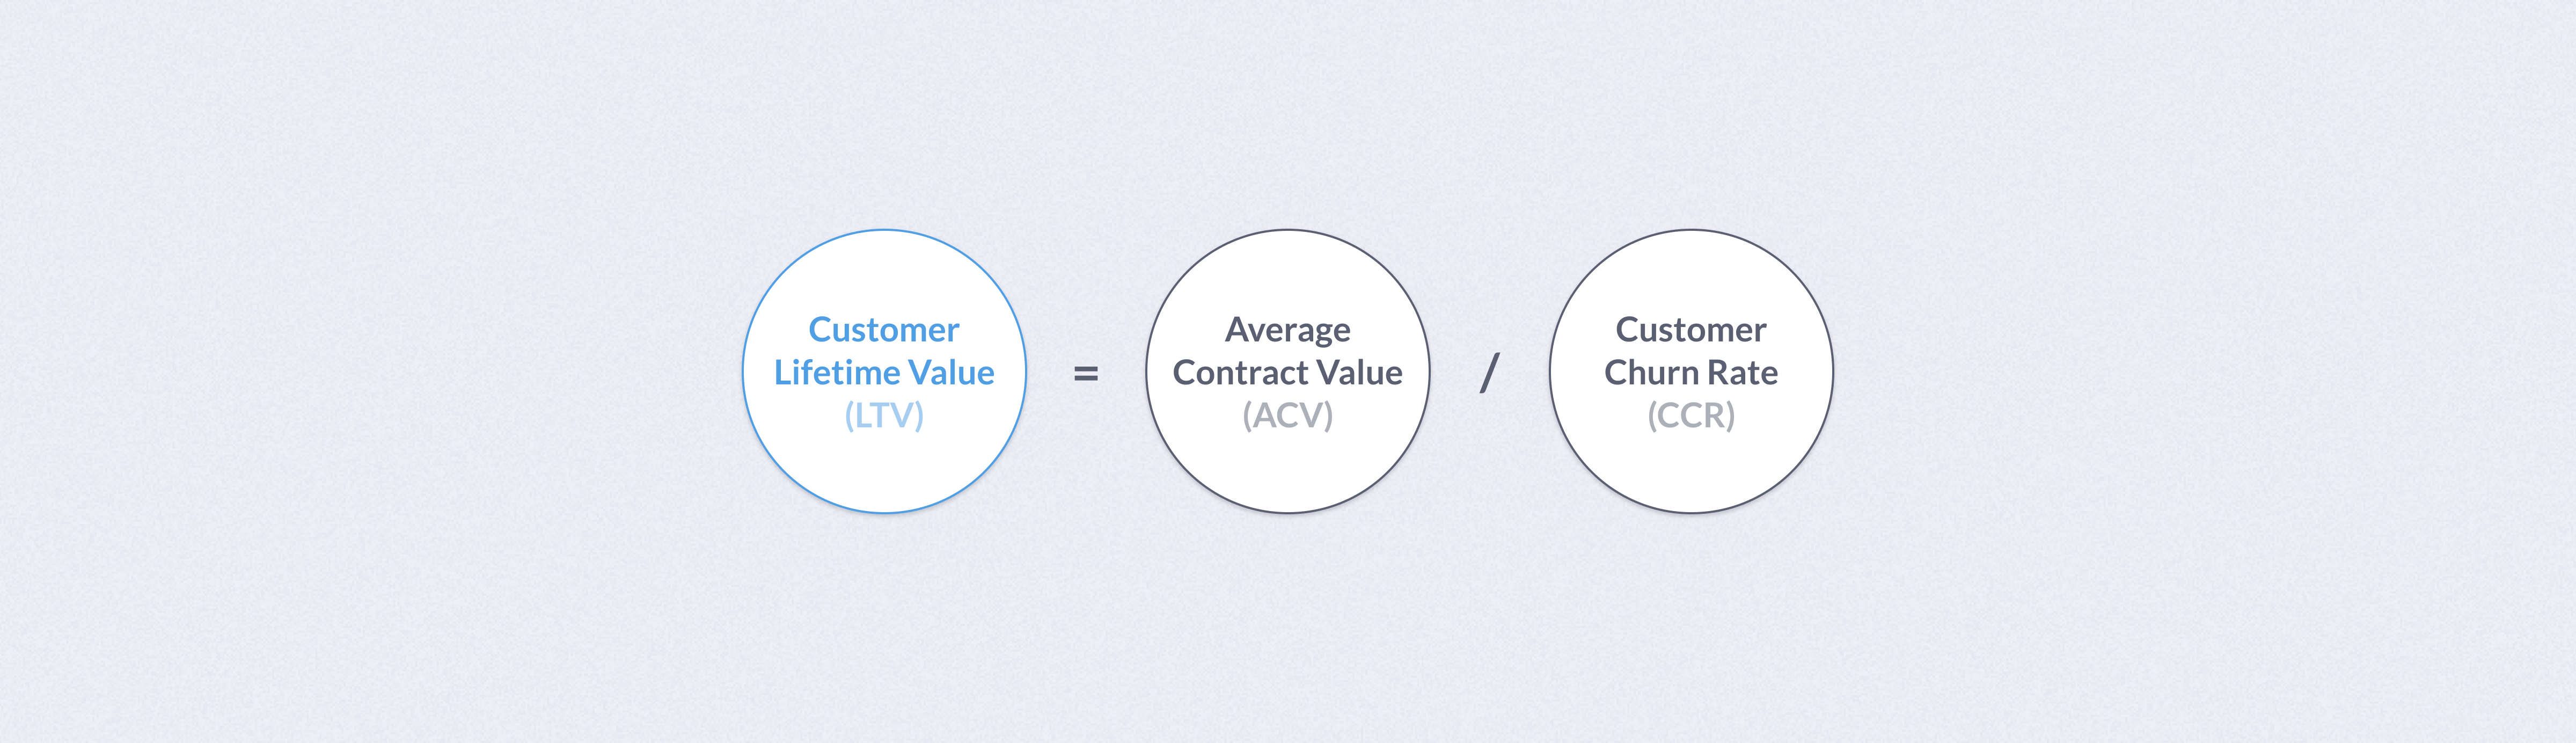 Customer lifetime value (LTV)